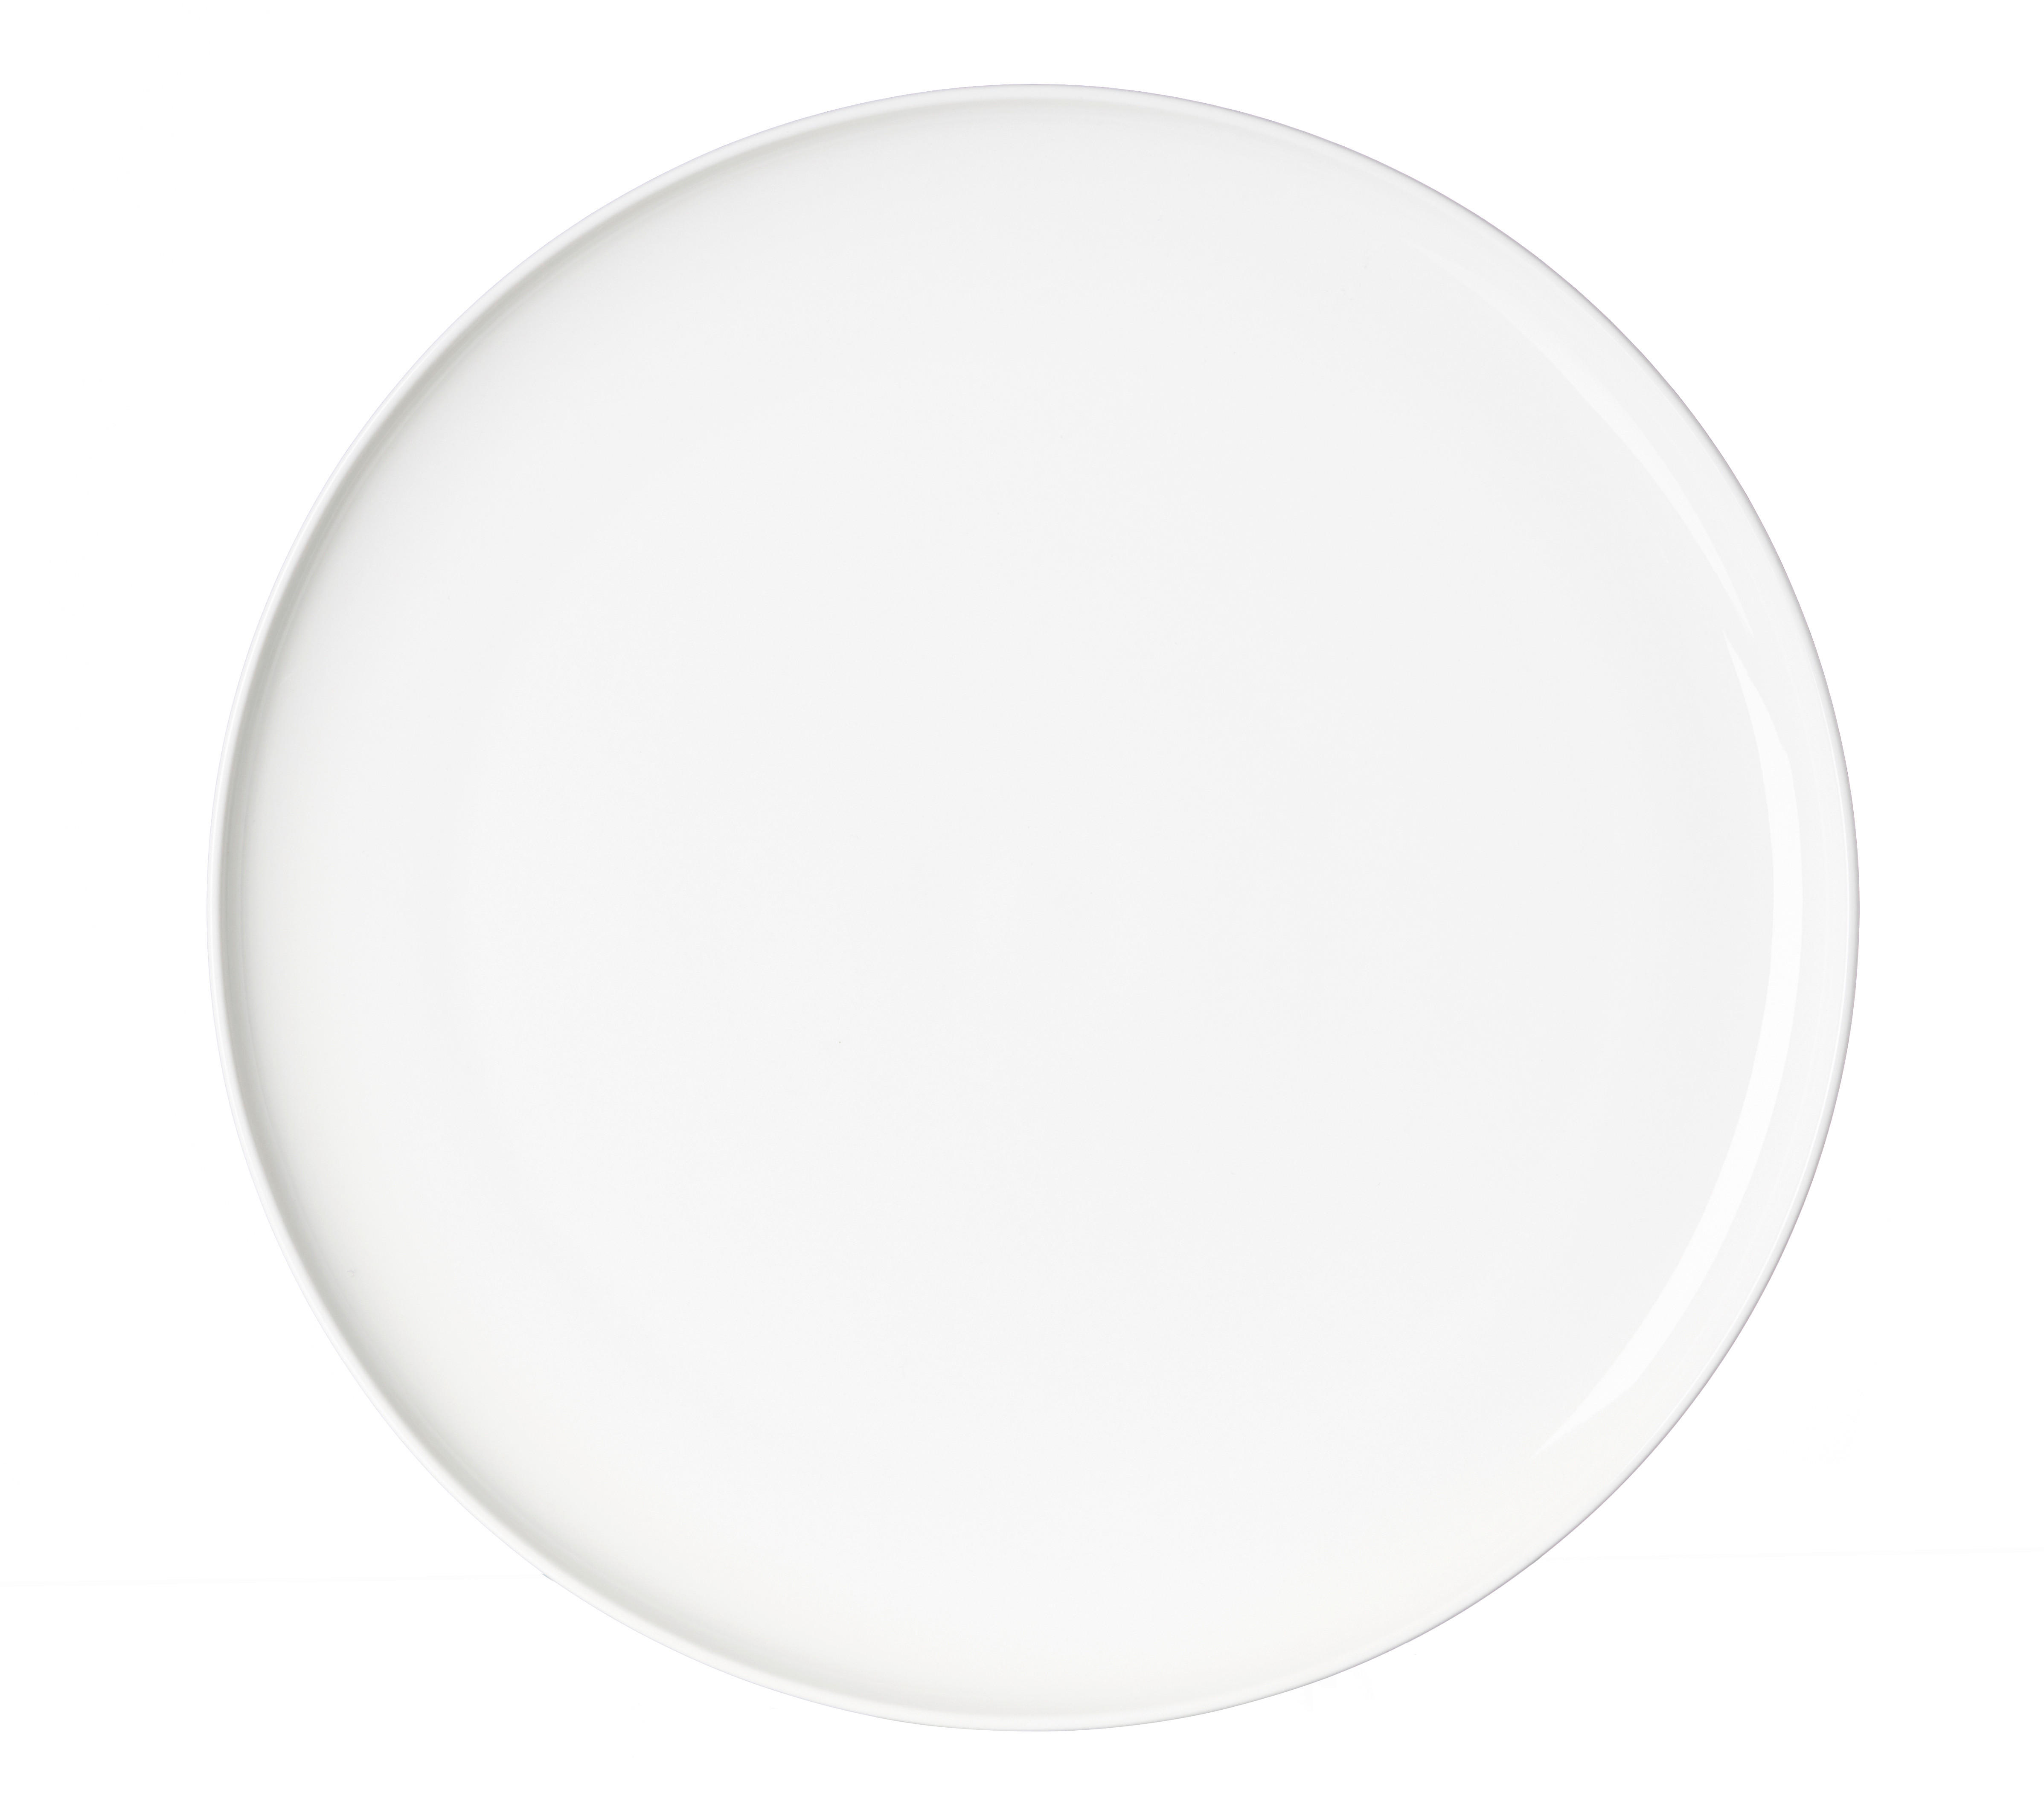 PLATZTELLER Keramik Porzellan  - Weiß, Design, Keramik (31cm) - Ritzenhoff Breker